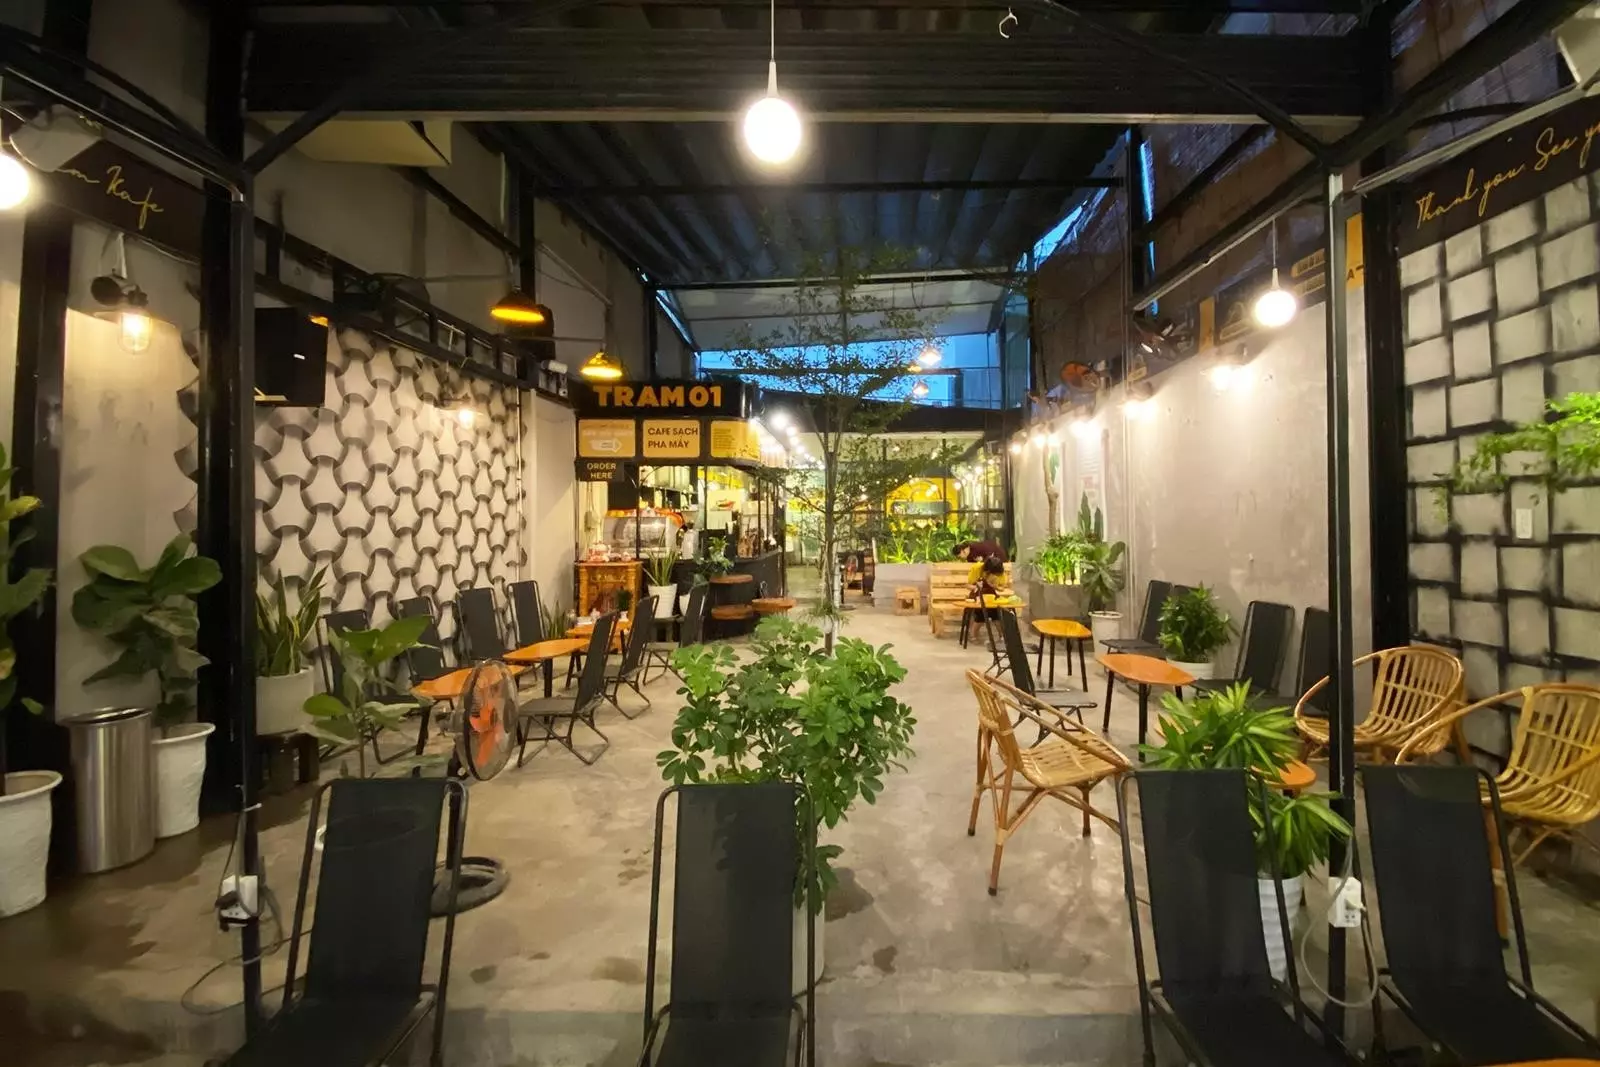 Trạm Kafe là một địa điểm phổ biến để thư giãn và thưởng thức cà phê, với không gian thoáng đãng và nhiều loại đồ uống ngon.